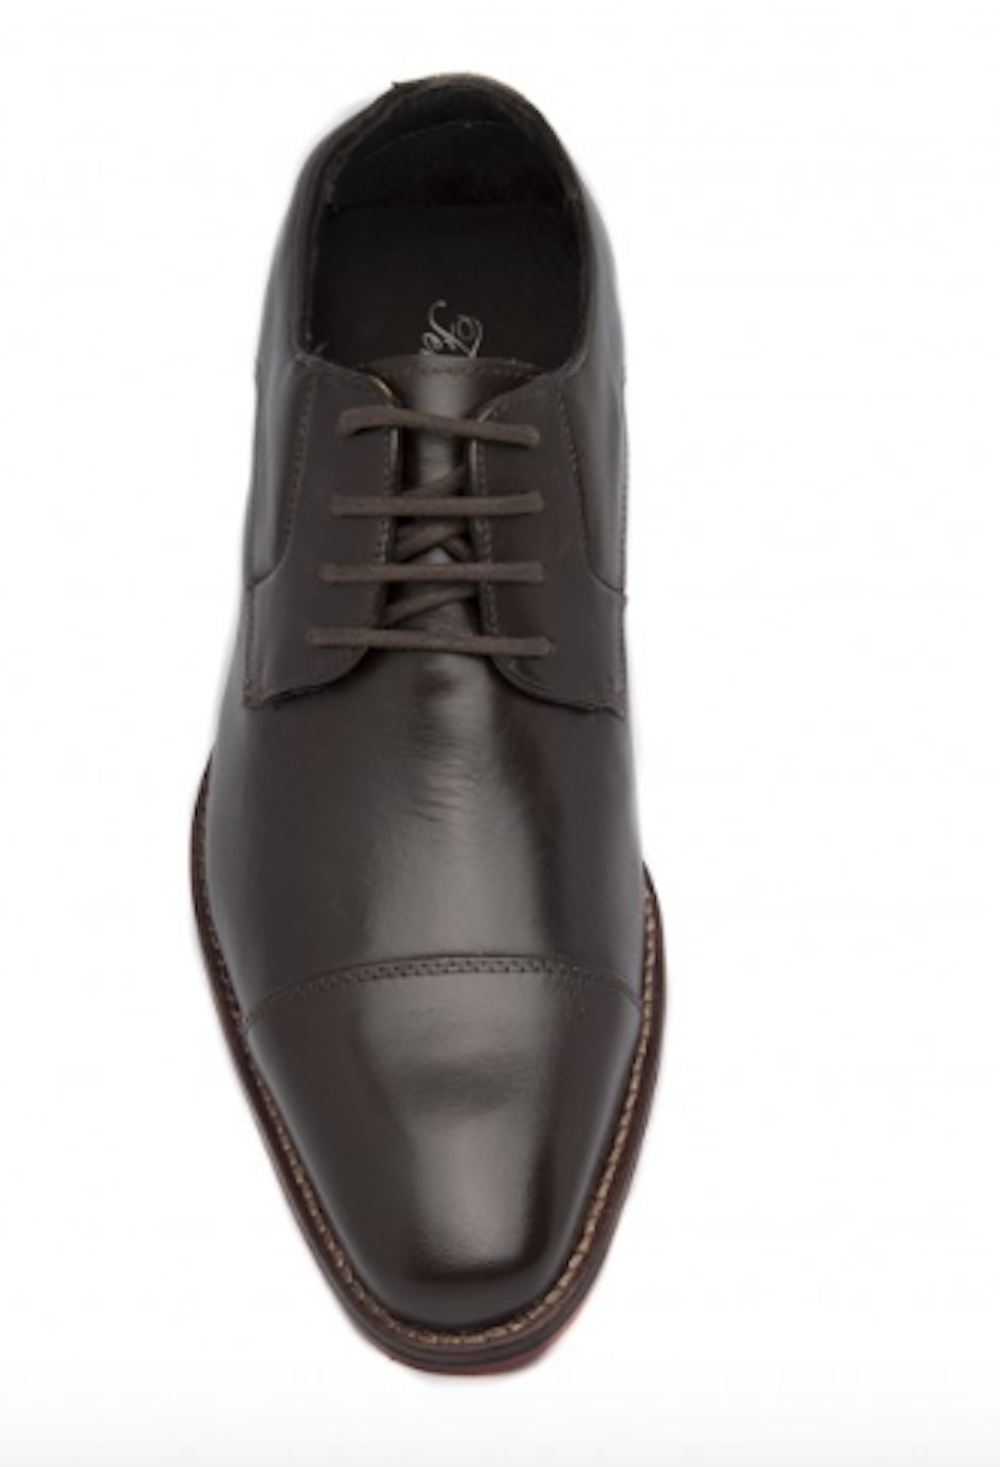 Zapatos de cuero para hombre Ferracini Caravaggio 5667